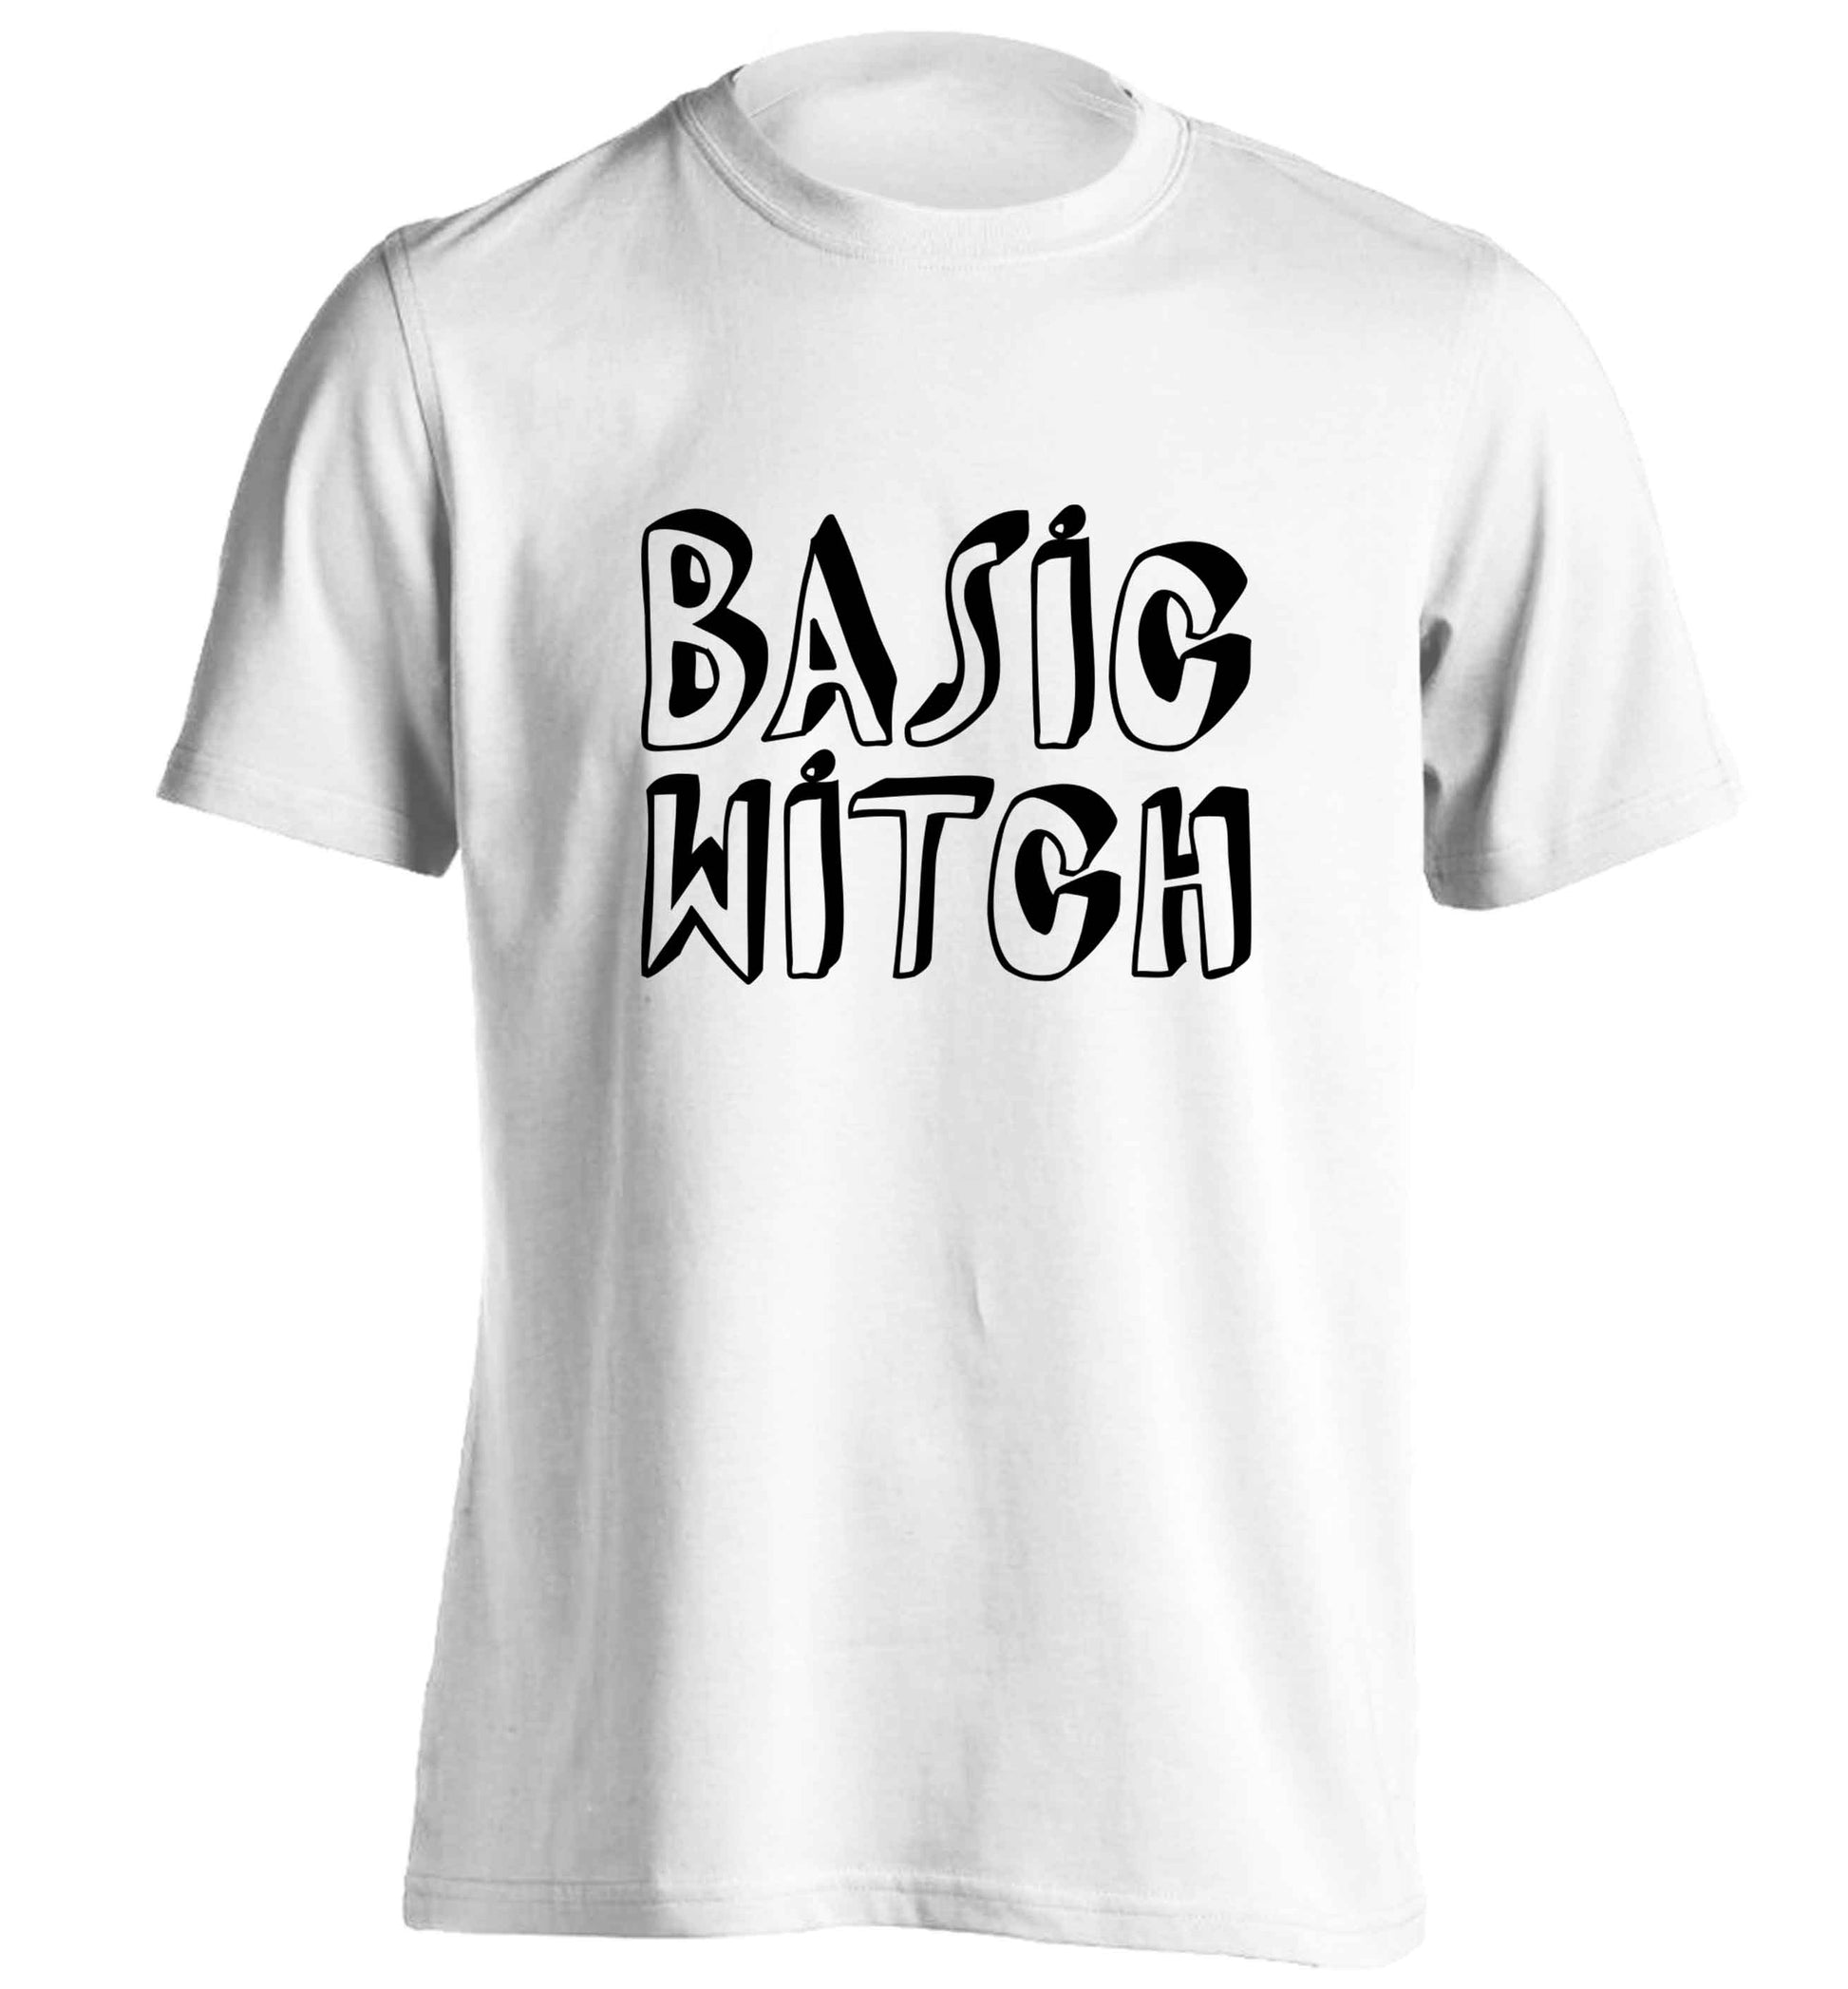 Basic witch adults unisex white Tshirt 2XL